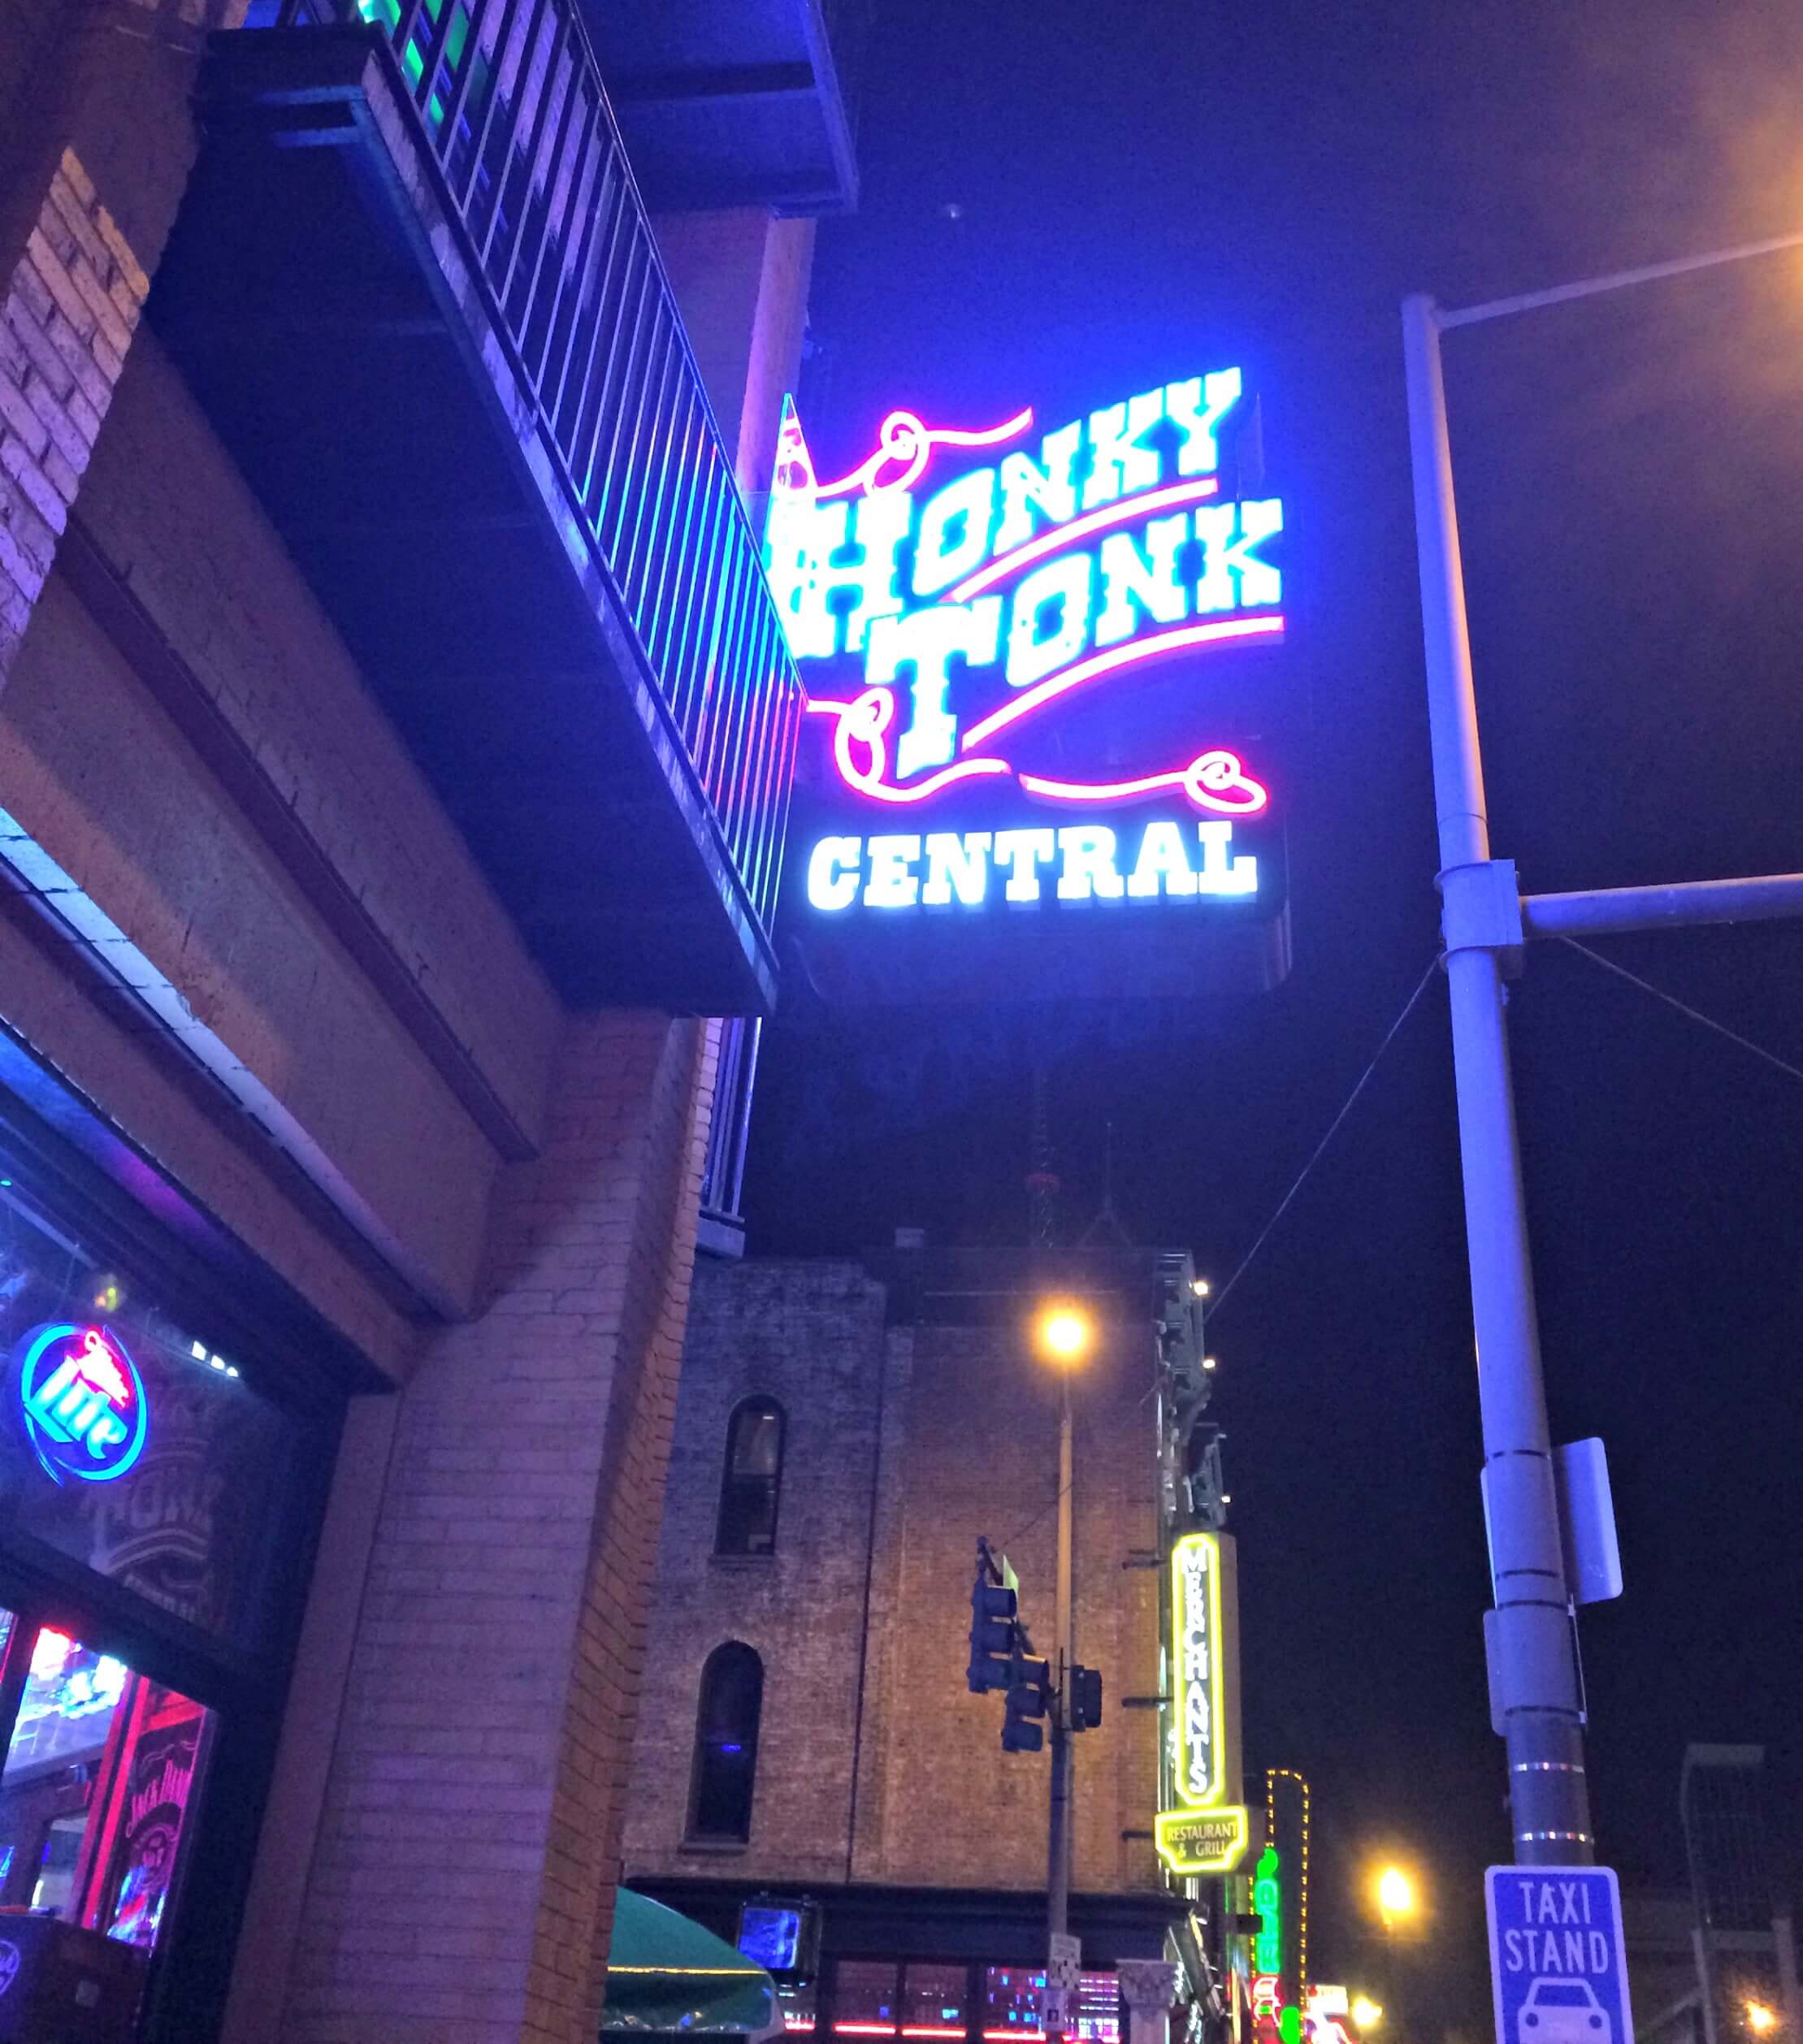 honky tonk central - Nashville, TN